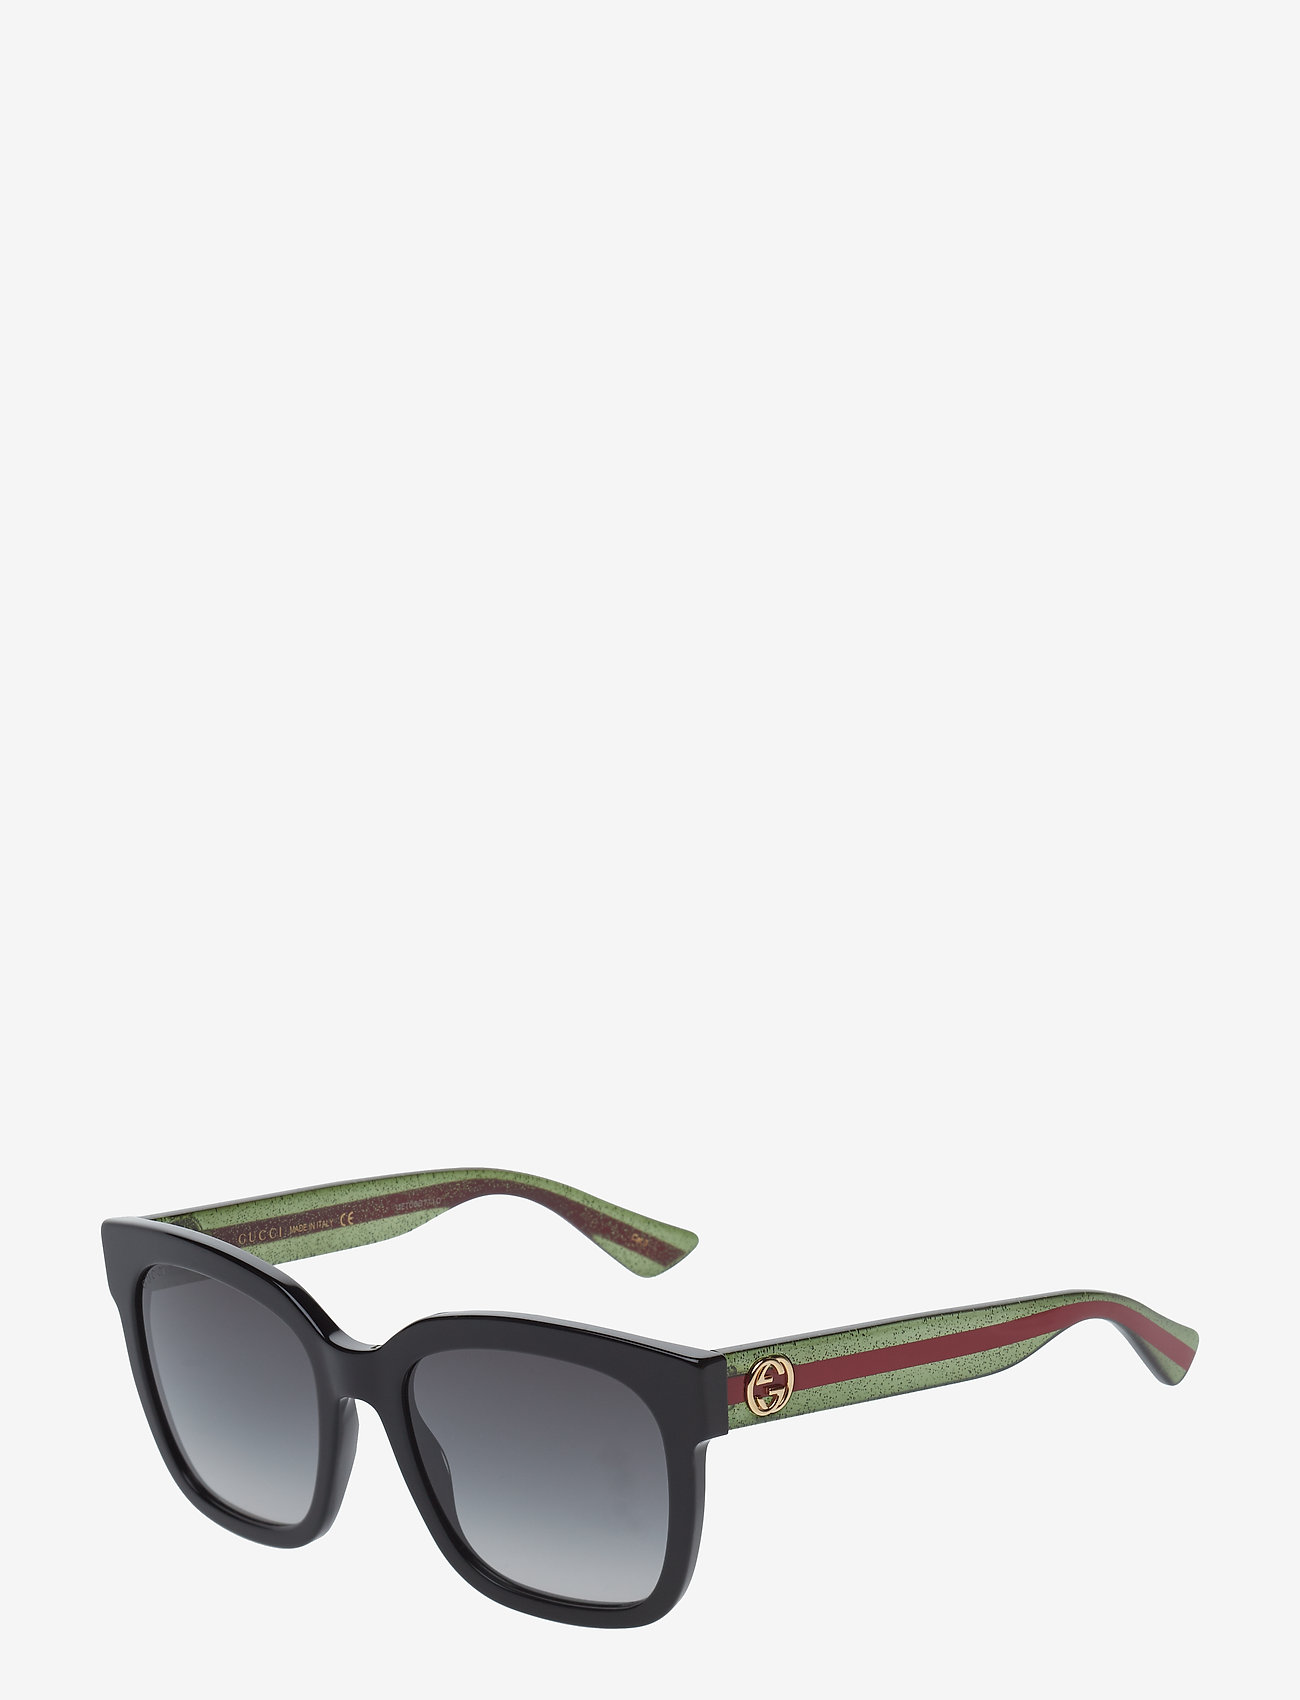 grey gucci sunglasses